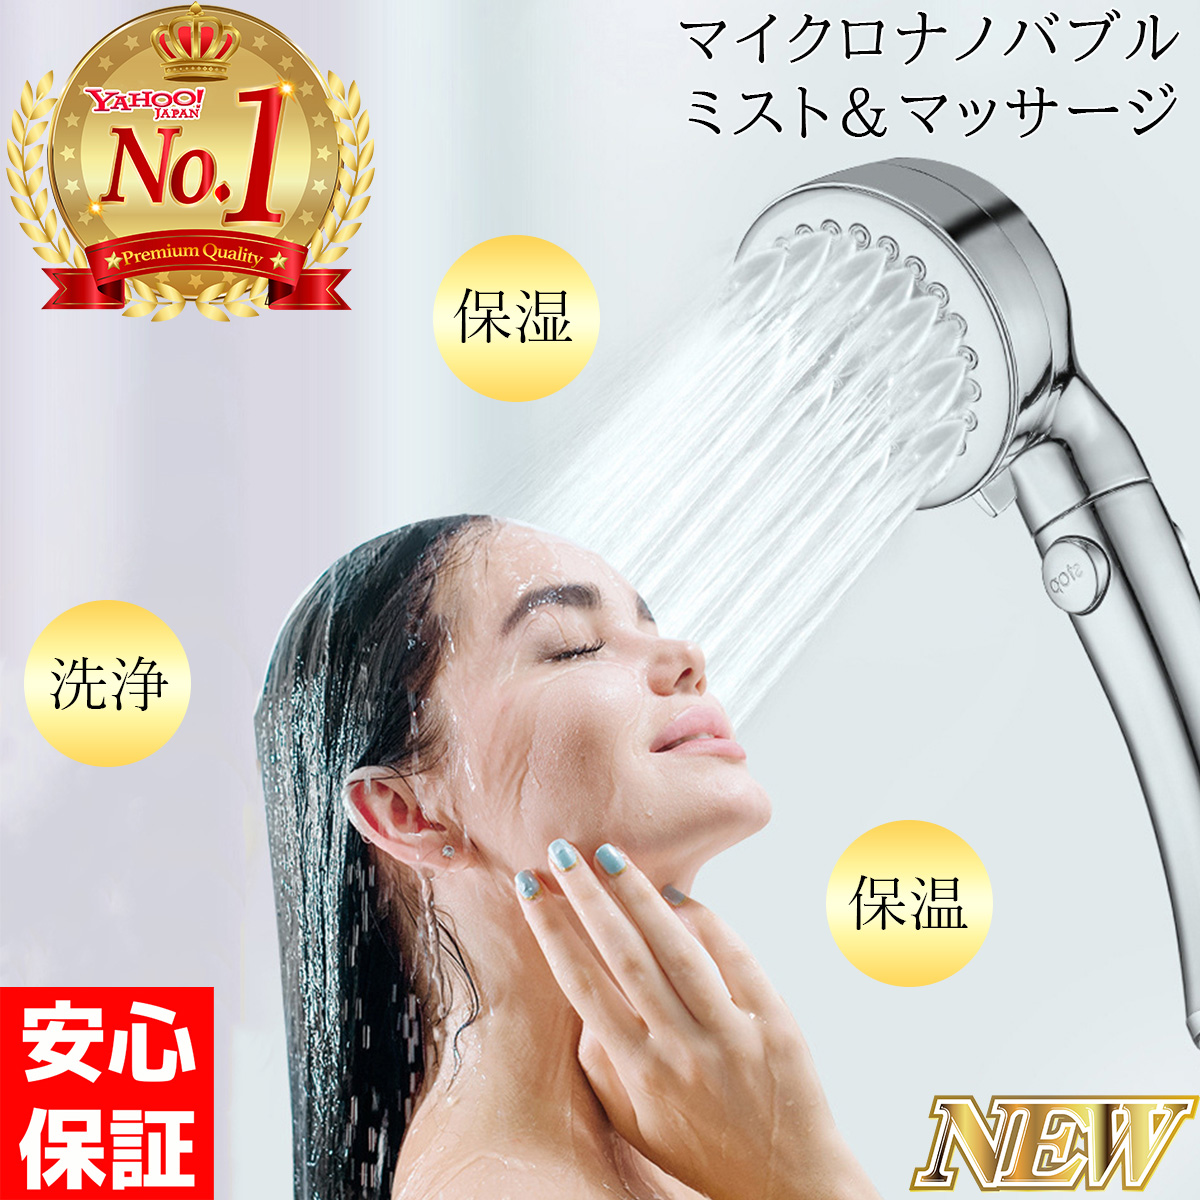 アウトレット シャワーヘッド マイクロナノバブル 節水 美肌 美髪 ワンタッチ止水 3段階シャワーモード アダプター付き 送料無料 